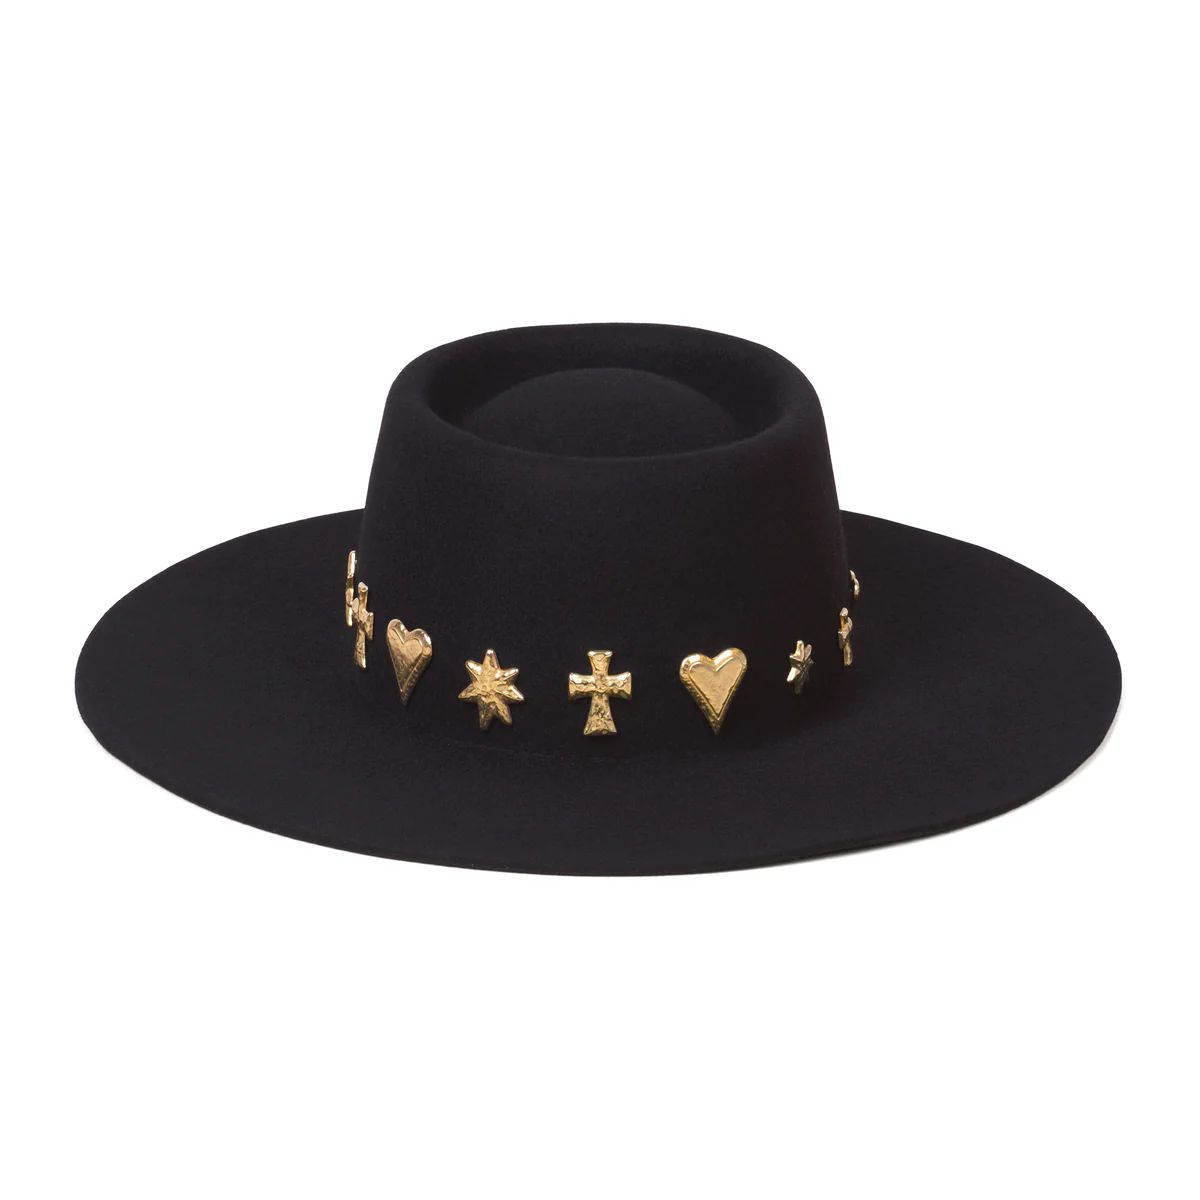 Celestial Boater - Wool Felt Boater Hat in Black | Lack of Color | Lack of Color